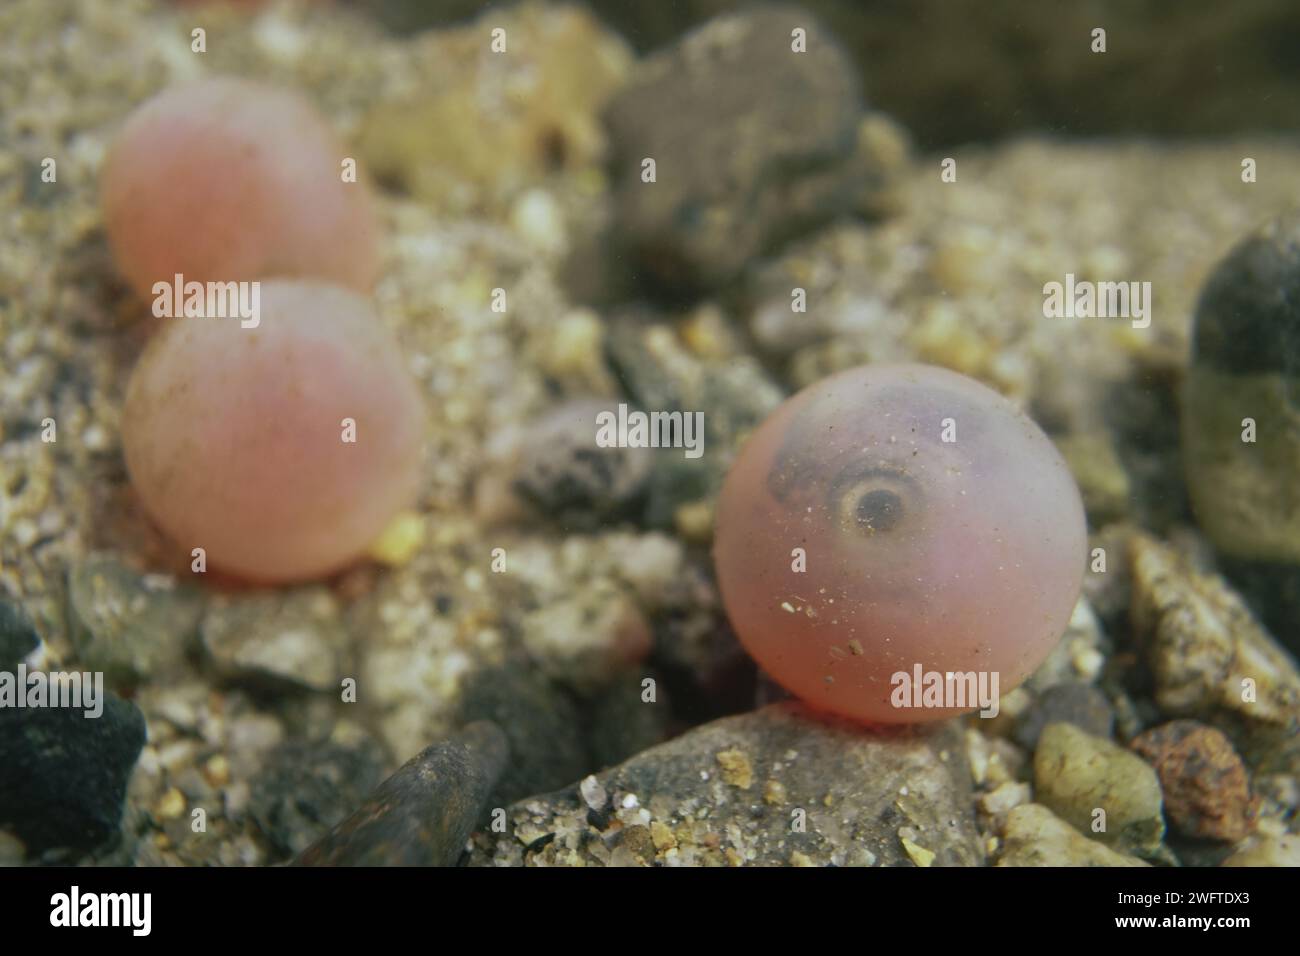 Uovo di salmone del Pacifico con un embrione visibile all'interno. Foto Stock